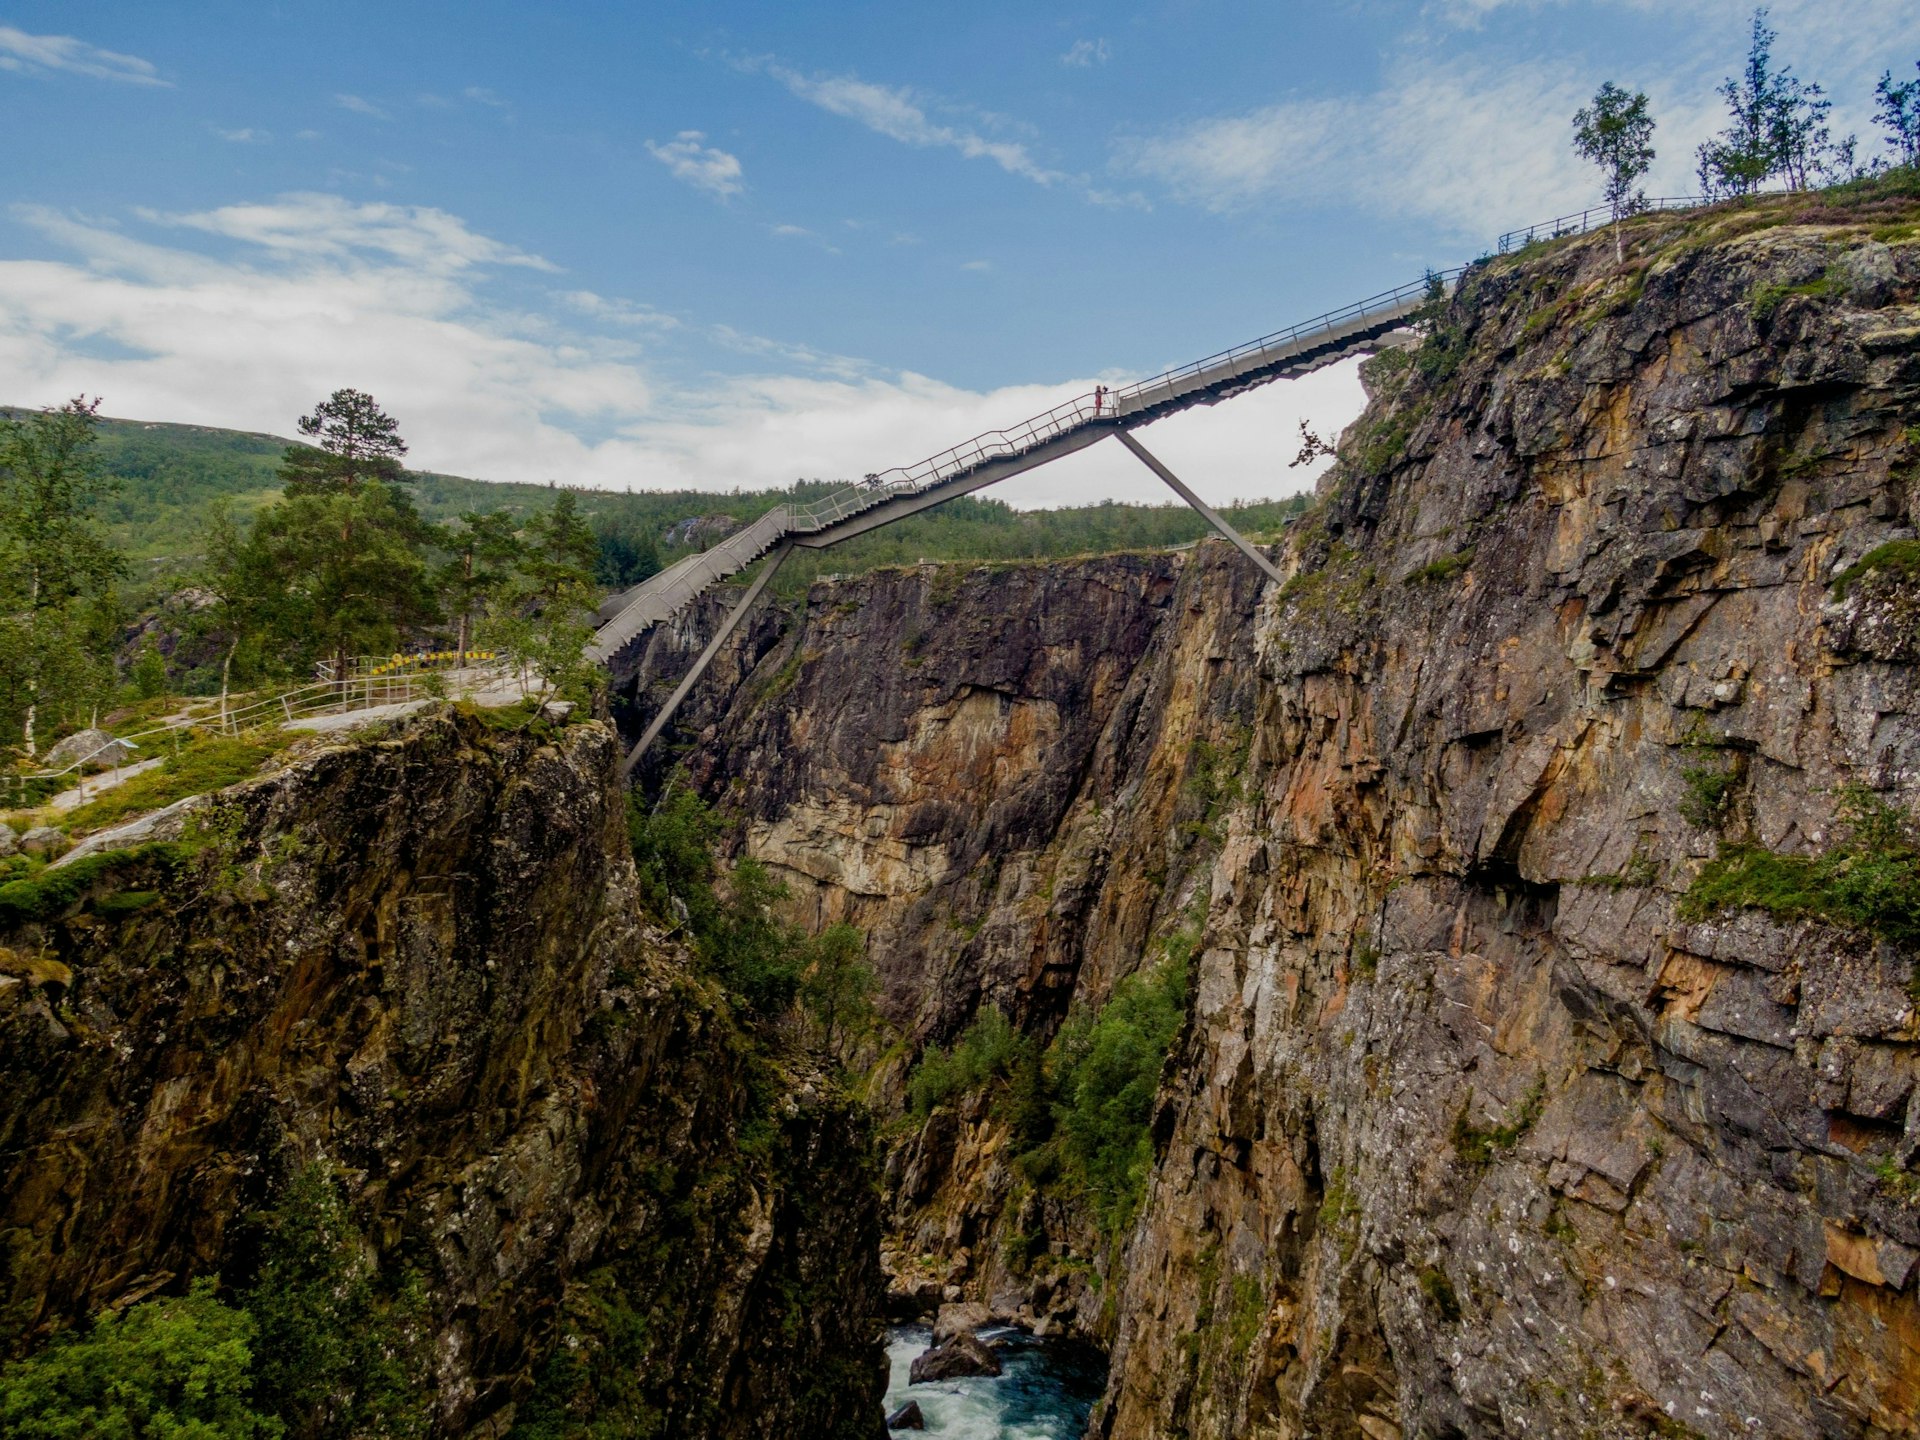 A view of Voringsfossen bridge in Norway